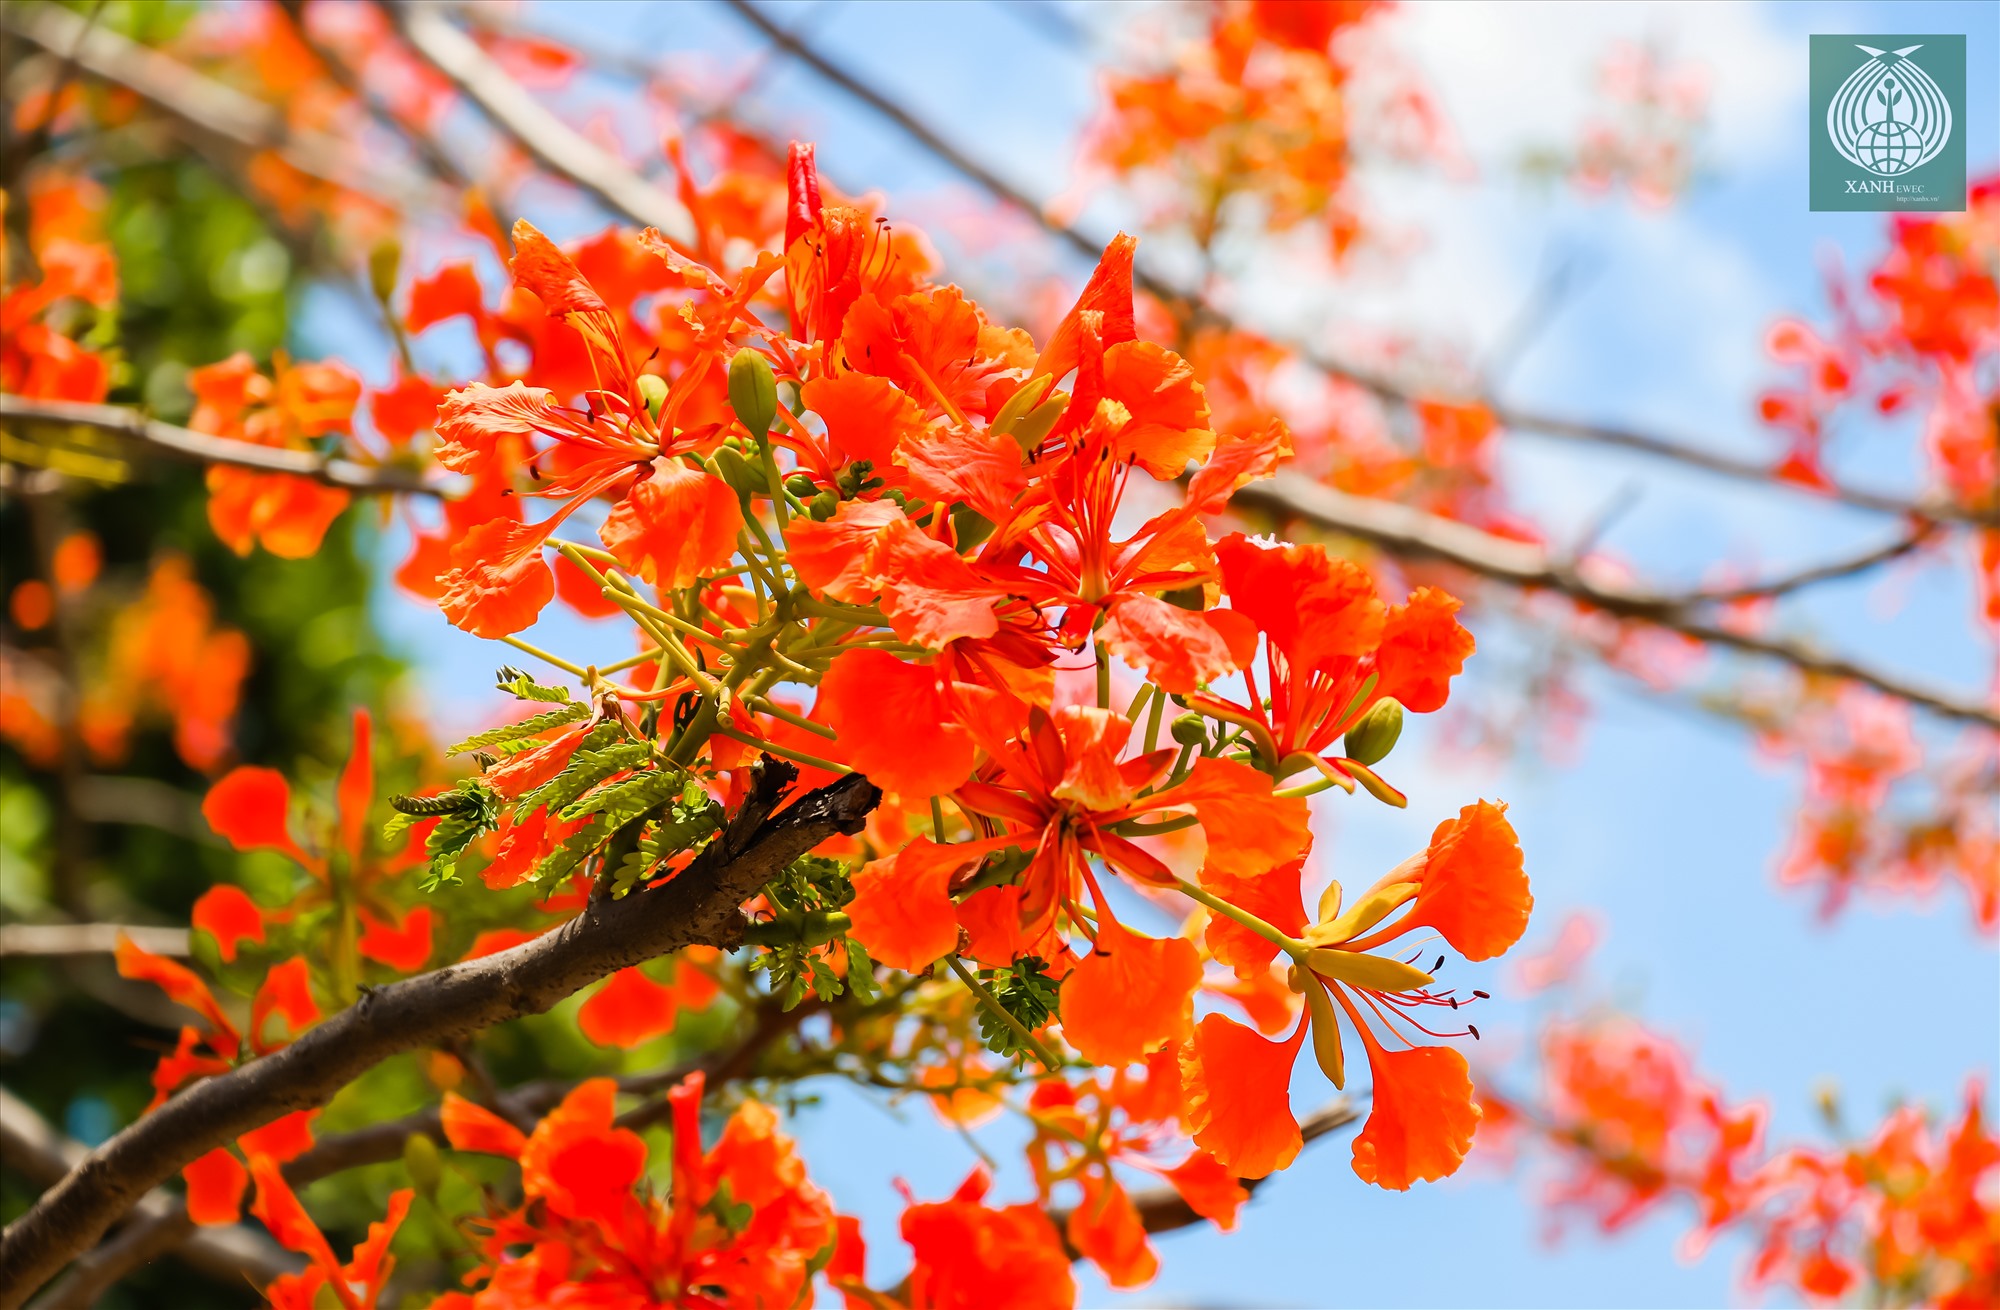 Hoa phượng thường có 4 cánh màu đỏ, cánh còn lại là màu trắng cam. Trời càng nắng gắt, hoa nở càng đẹp.